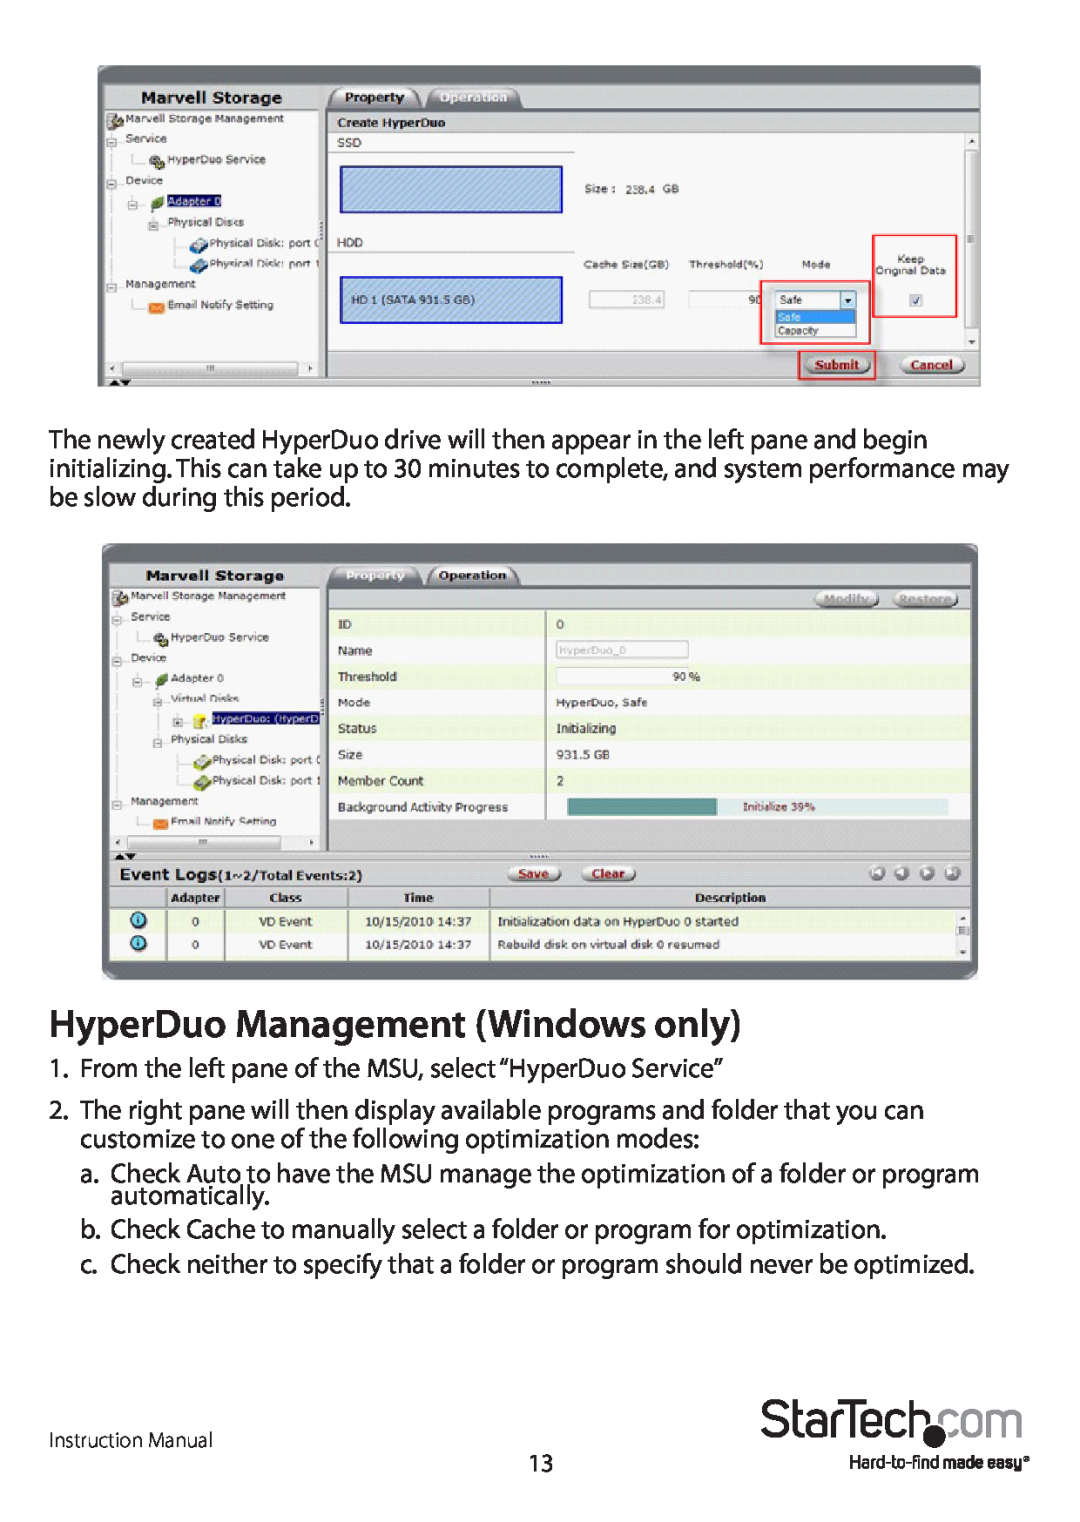 StarTech.com PEXSAT34RH manual HyperDuo Management Windows only 